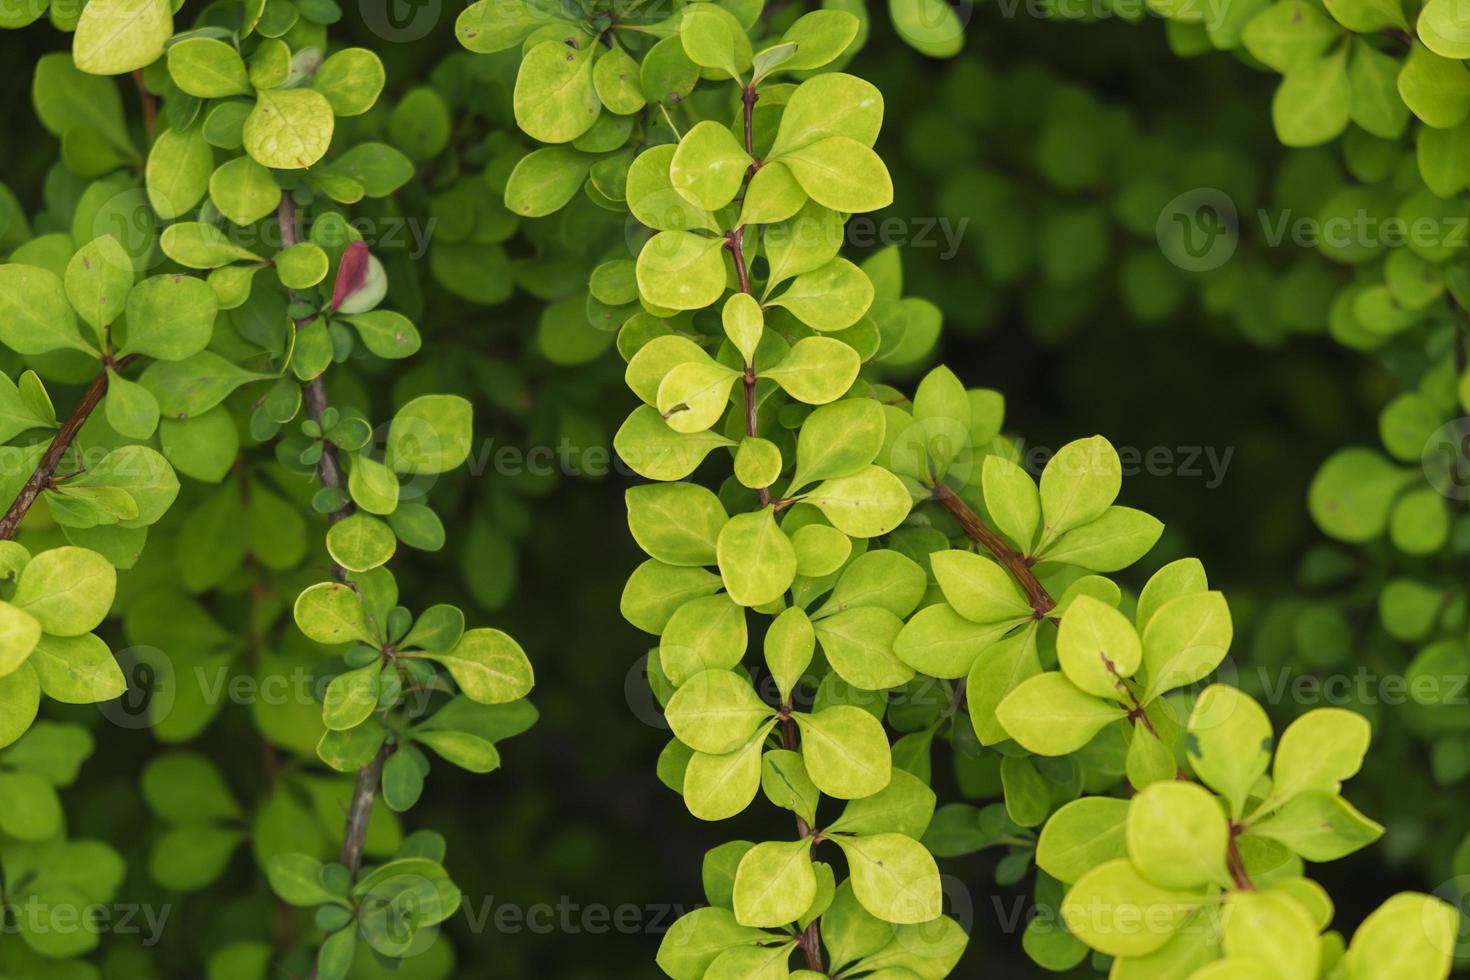 entrelazamiento de ramitas amarillas y hojas de agracejo en un día de verano en el jardín foto